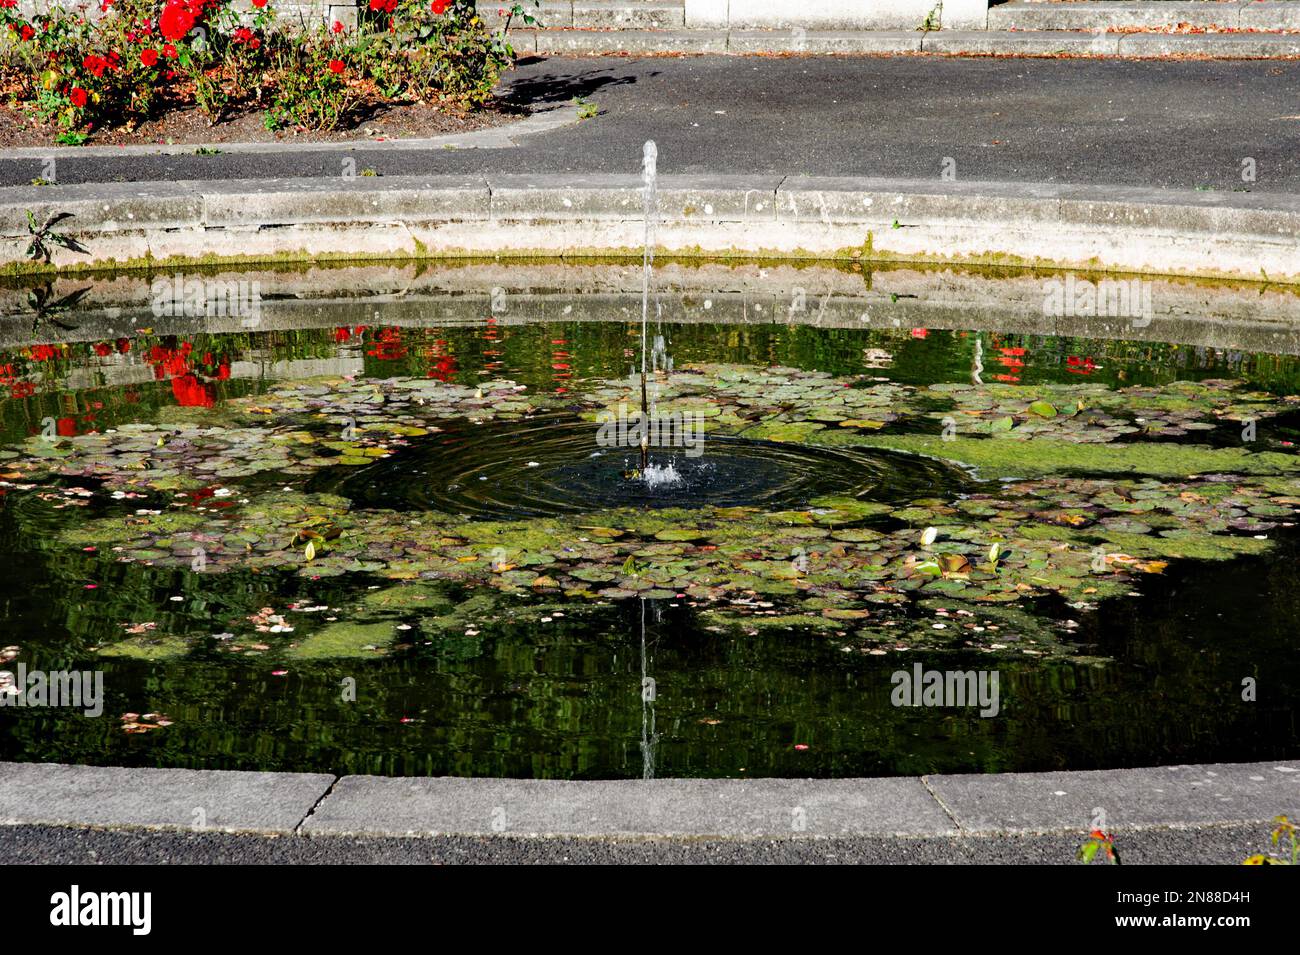 Fontaine dans le jardin de roses des jardins du mémorial de guerre irlandais à Islandbridge, Dublin. Conçu par Sir Edwin Lutyens comme un mémorial de WW1, conçu en 1930 Banque D'Images